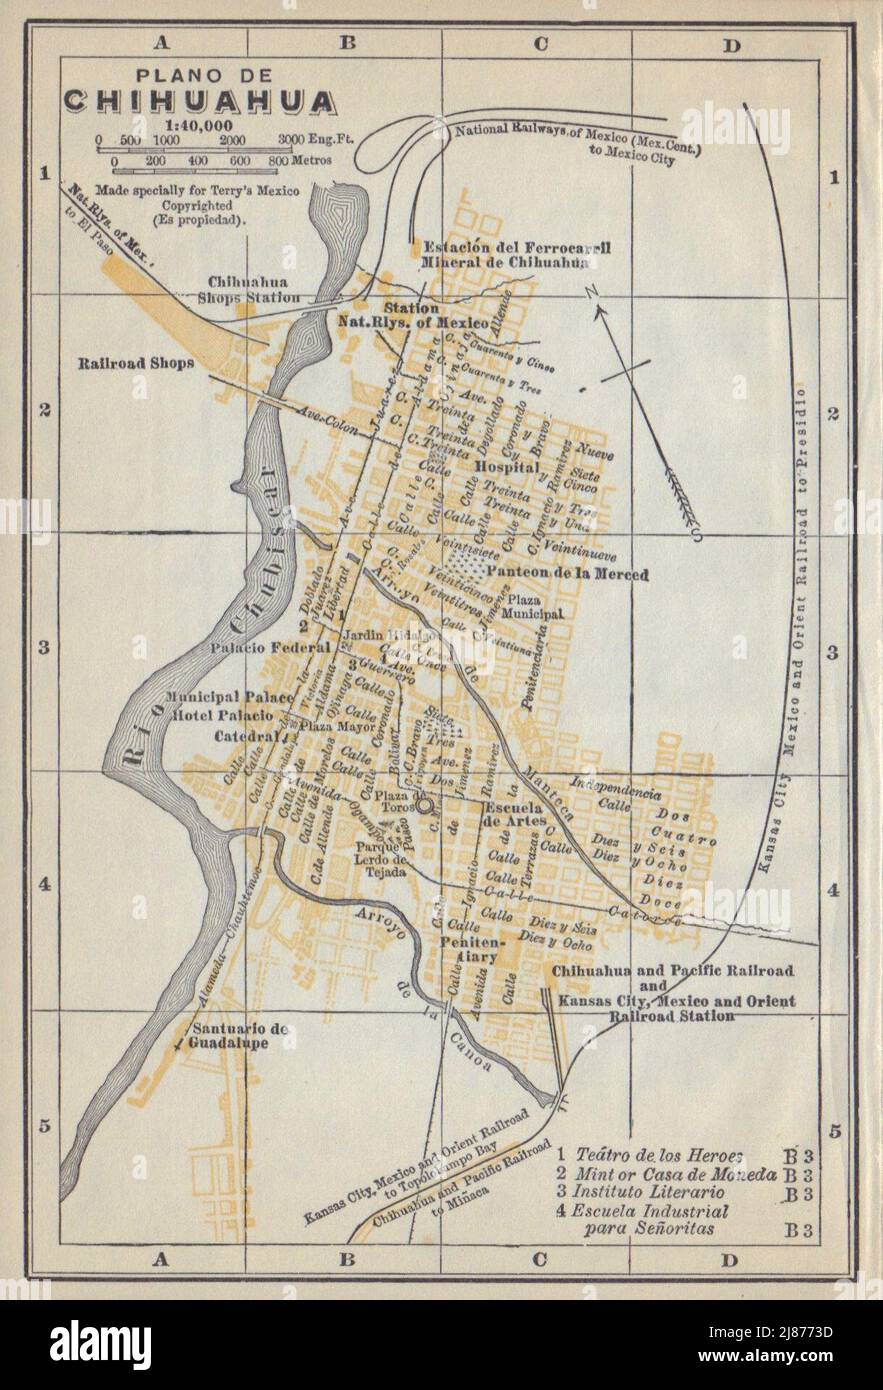 Plano de CHIHUAHUA, Mexico. Mapa de la ciudad. City/town plan 1938 old Stock Photo